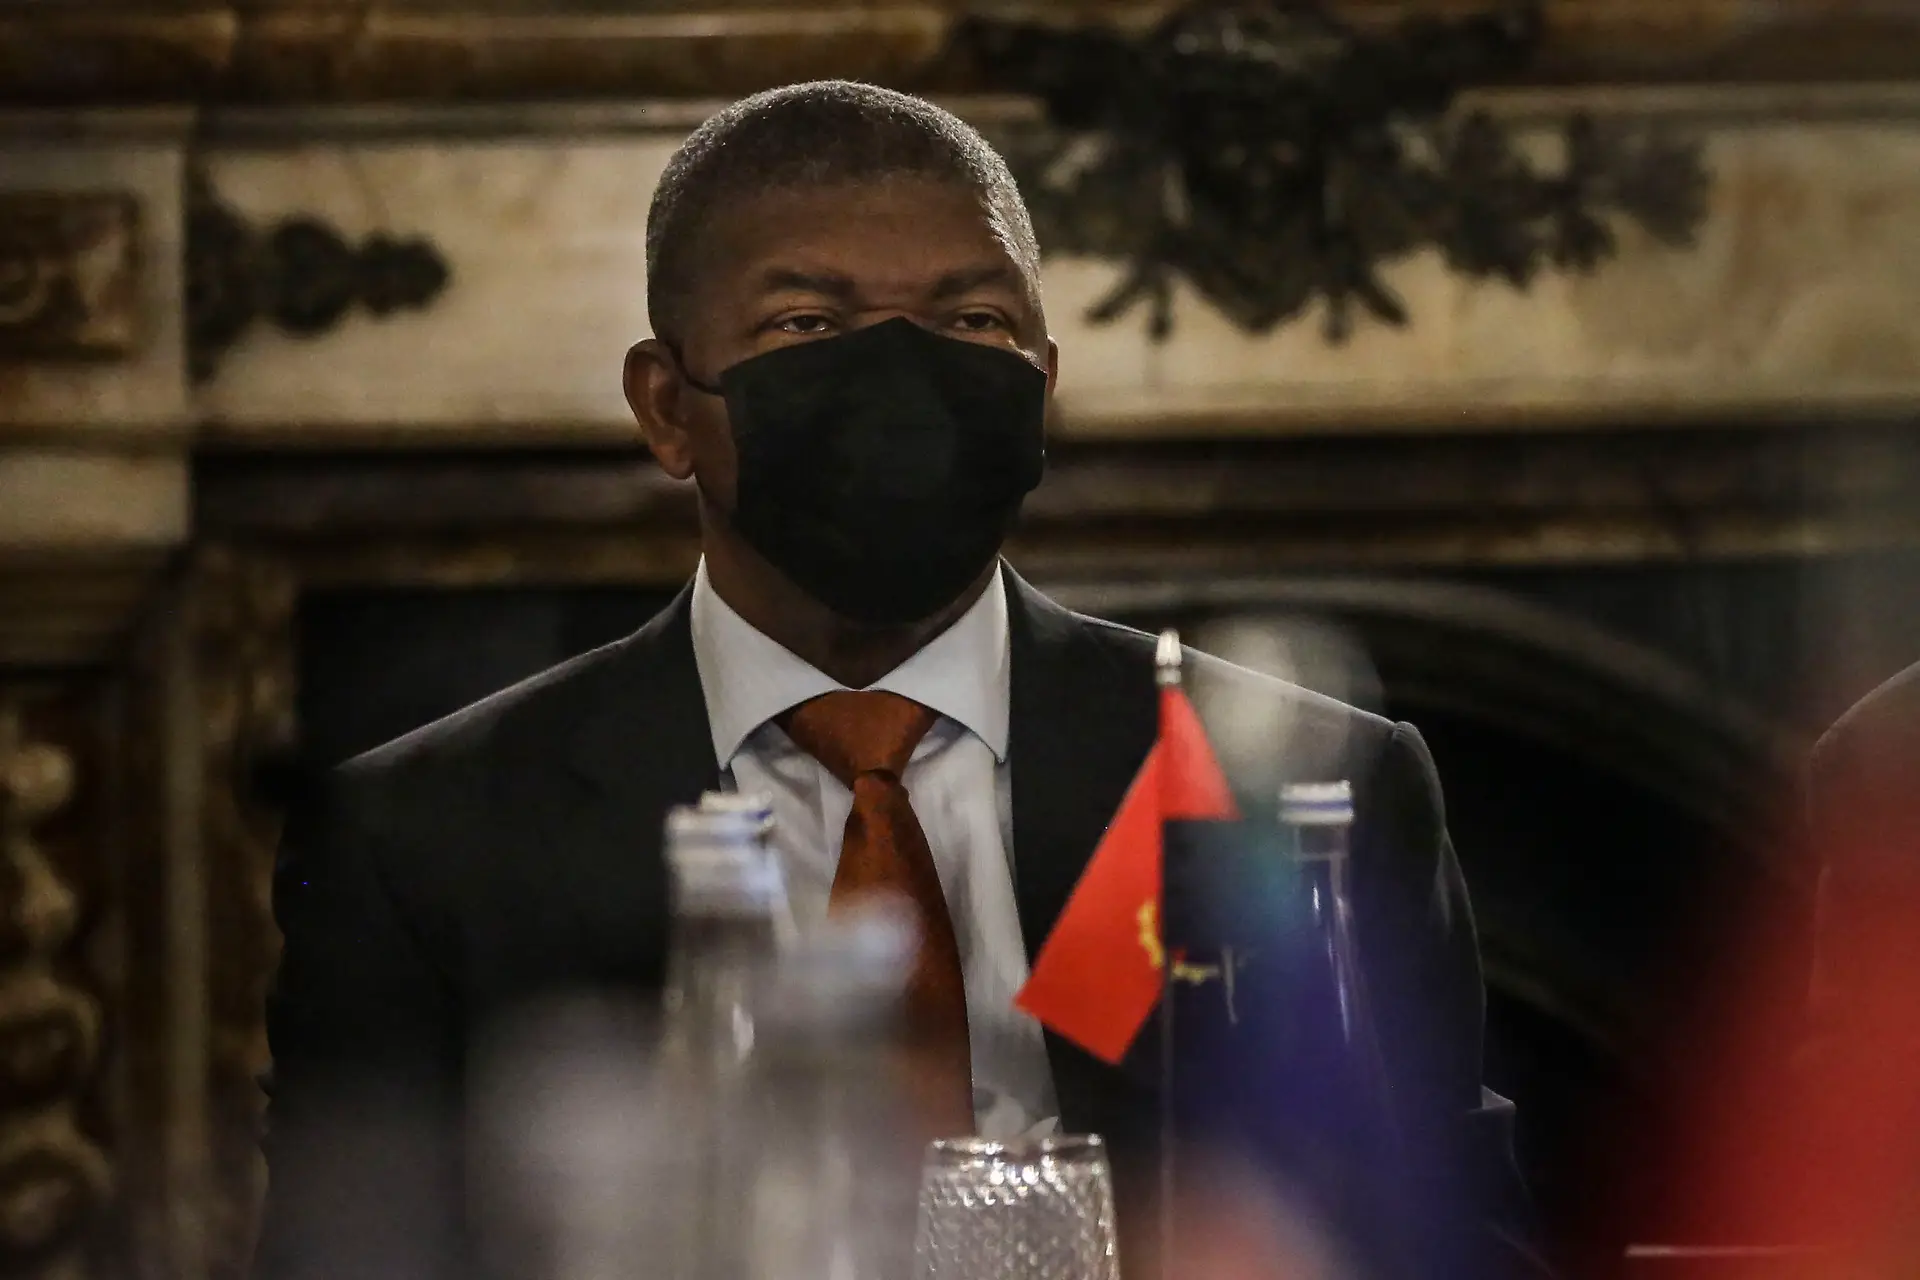 Eleições em Angola: Chega diz que foi desperdiçada "oportunidade para mudança"